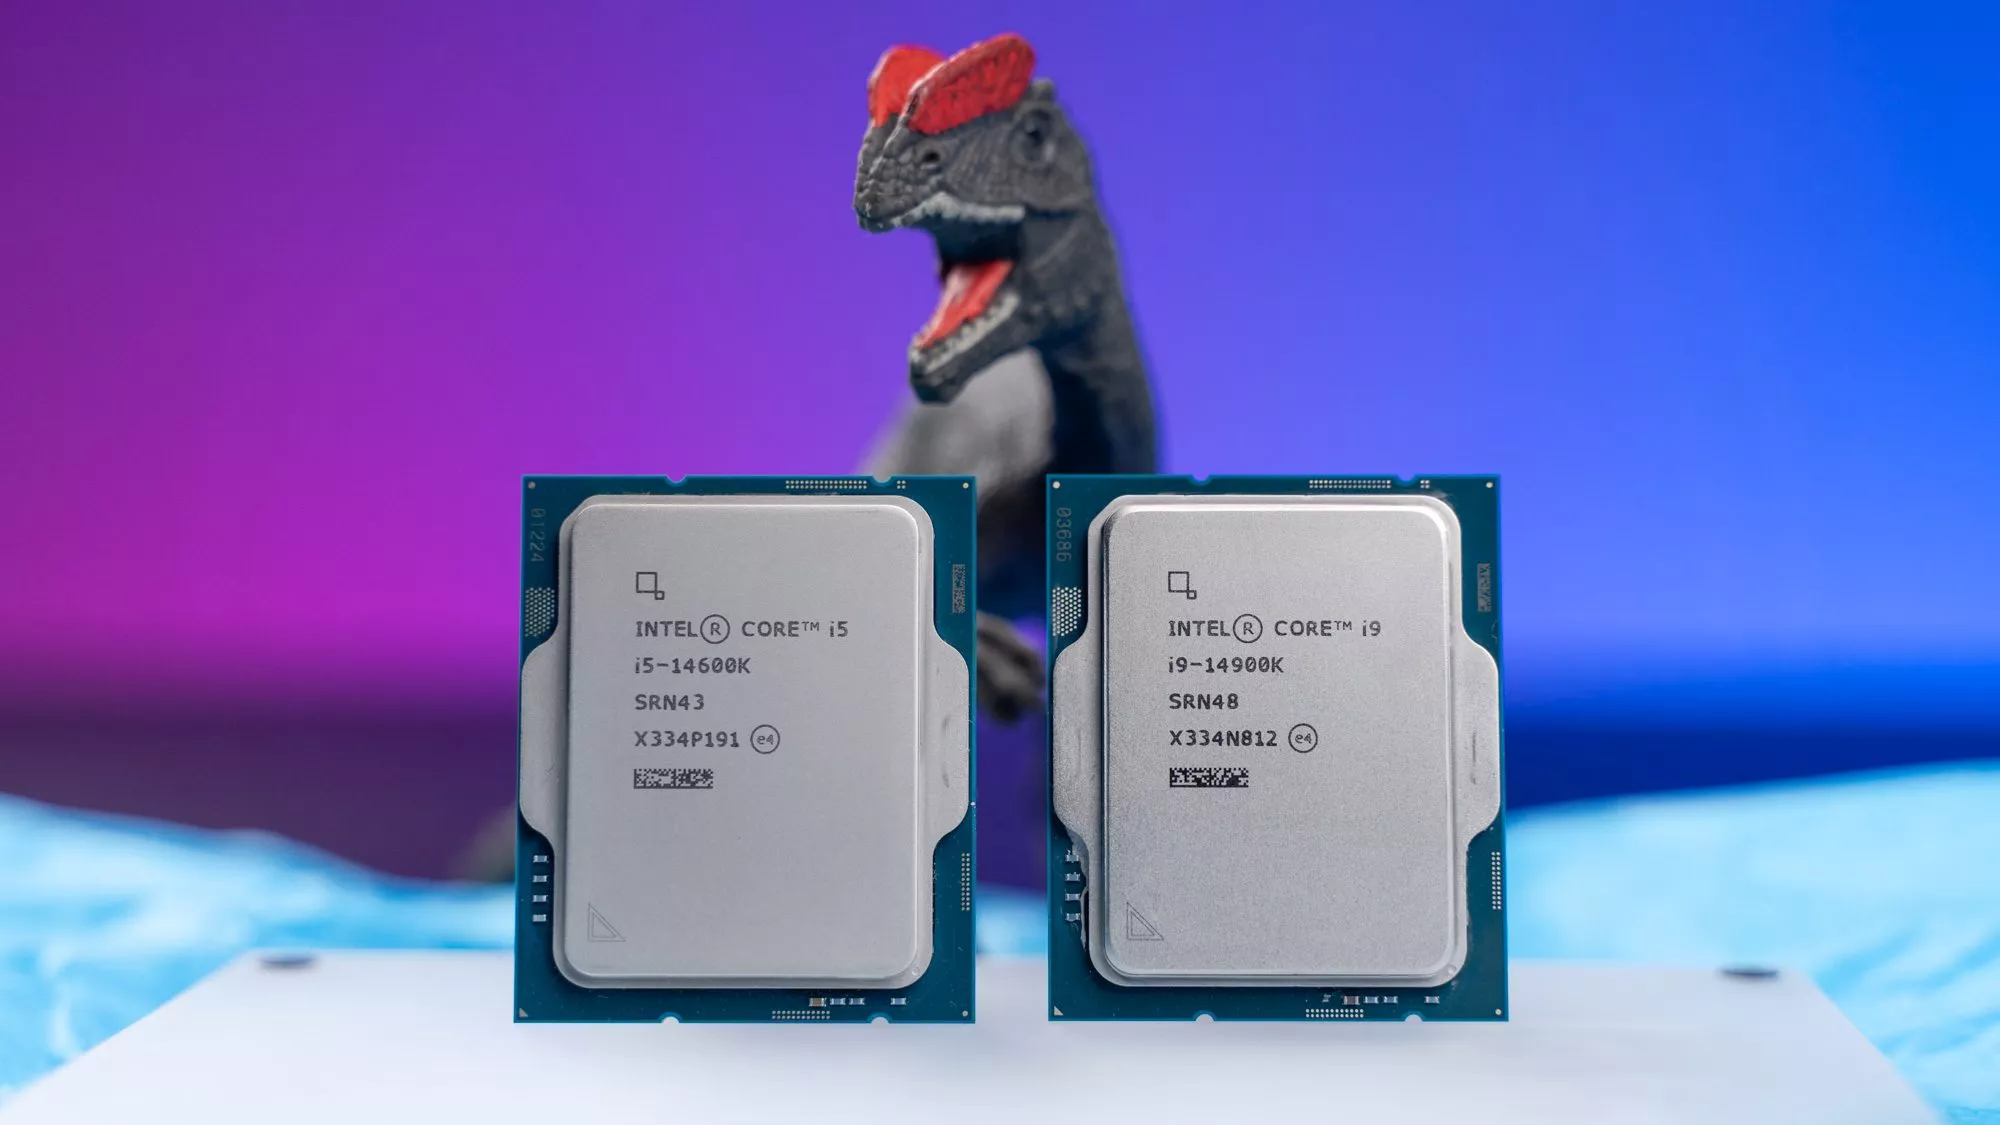 Zwei Intel-Prozessoren der 14. Generation, dahinter ein Spielzeug-Dinosaurier.